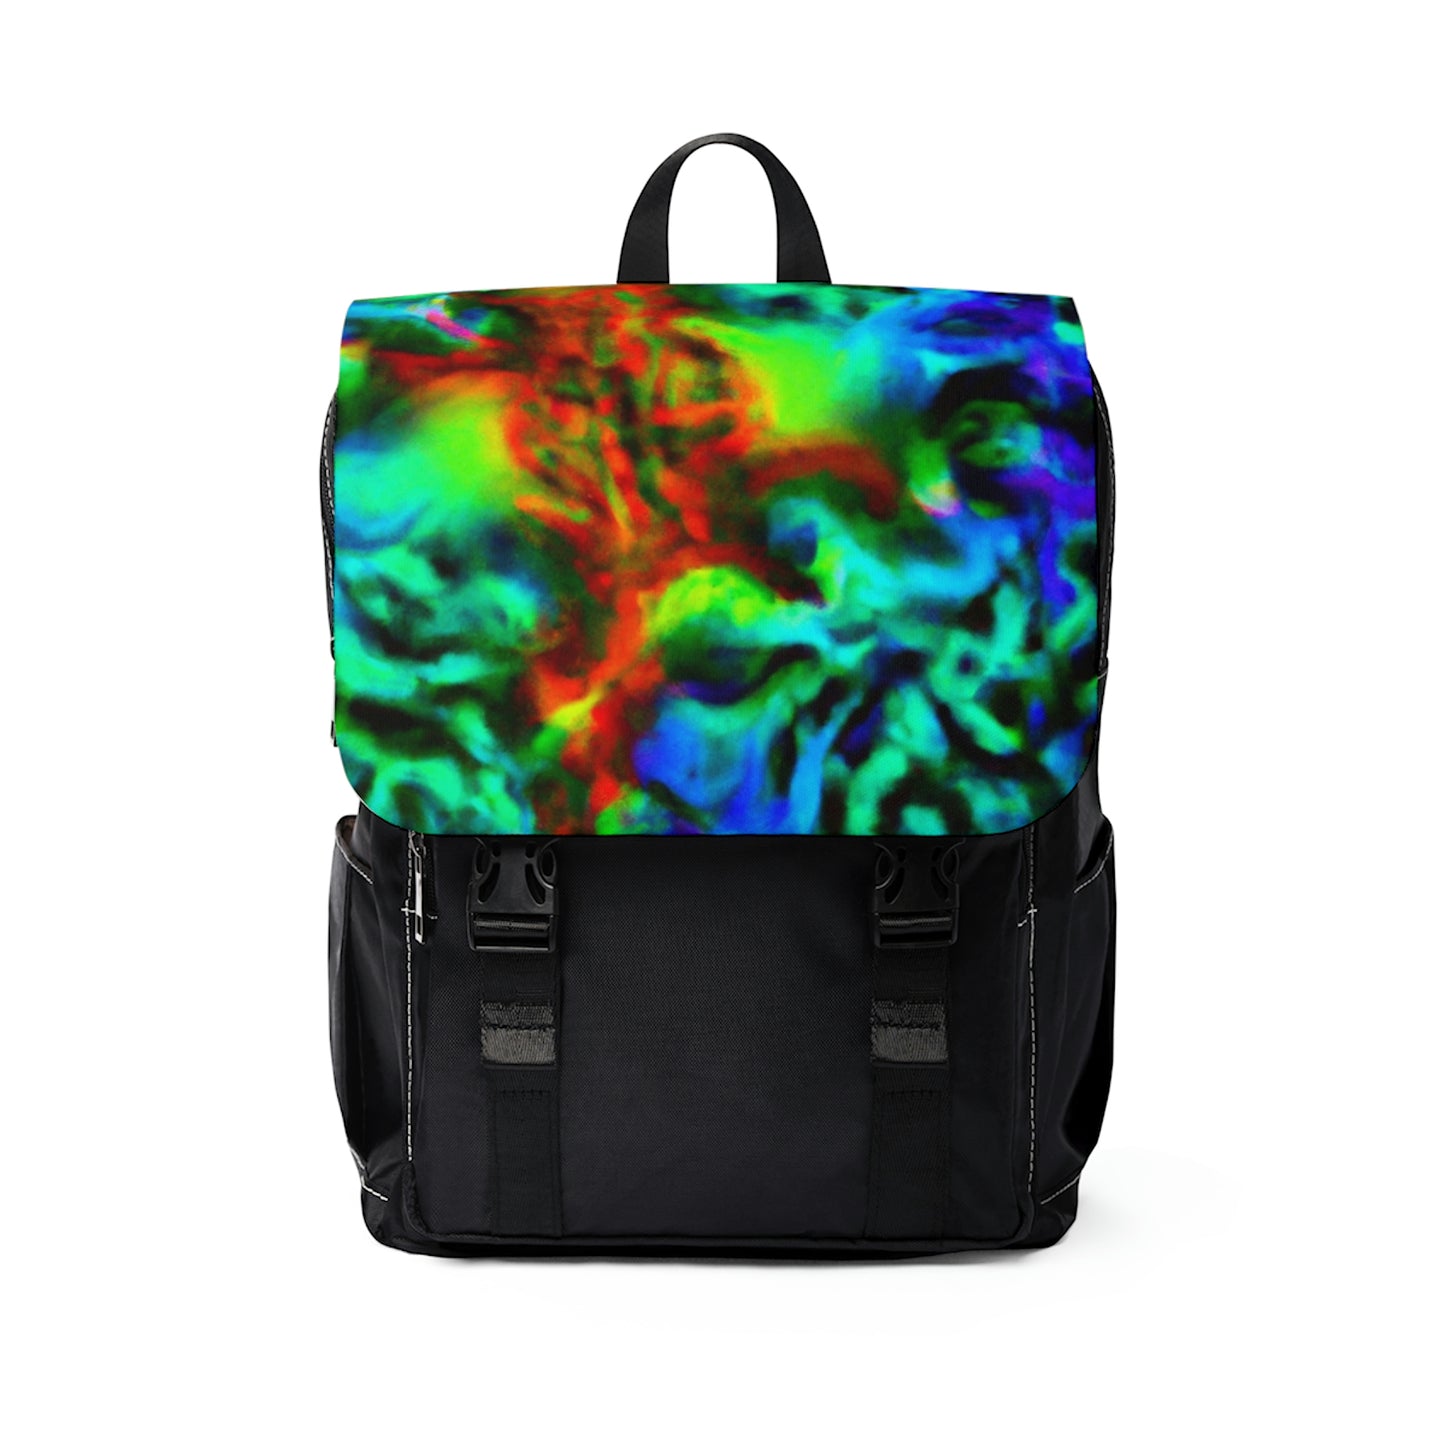 Femmylla - Psychedelic Shoulder Travel Backpack Bag